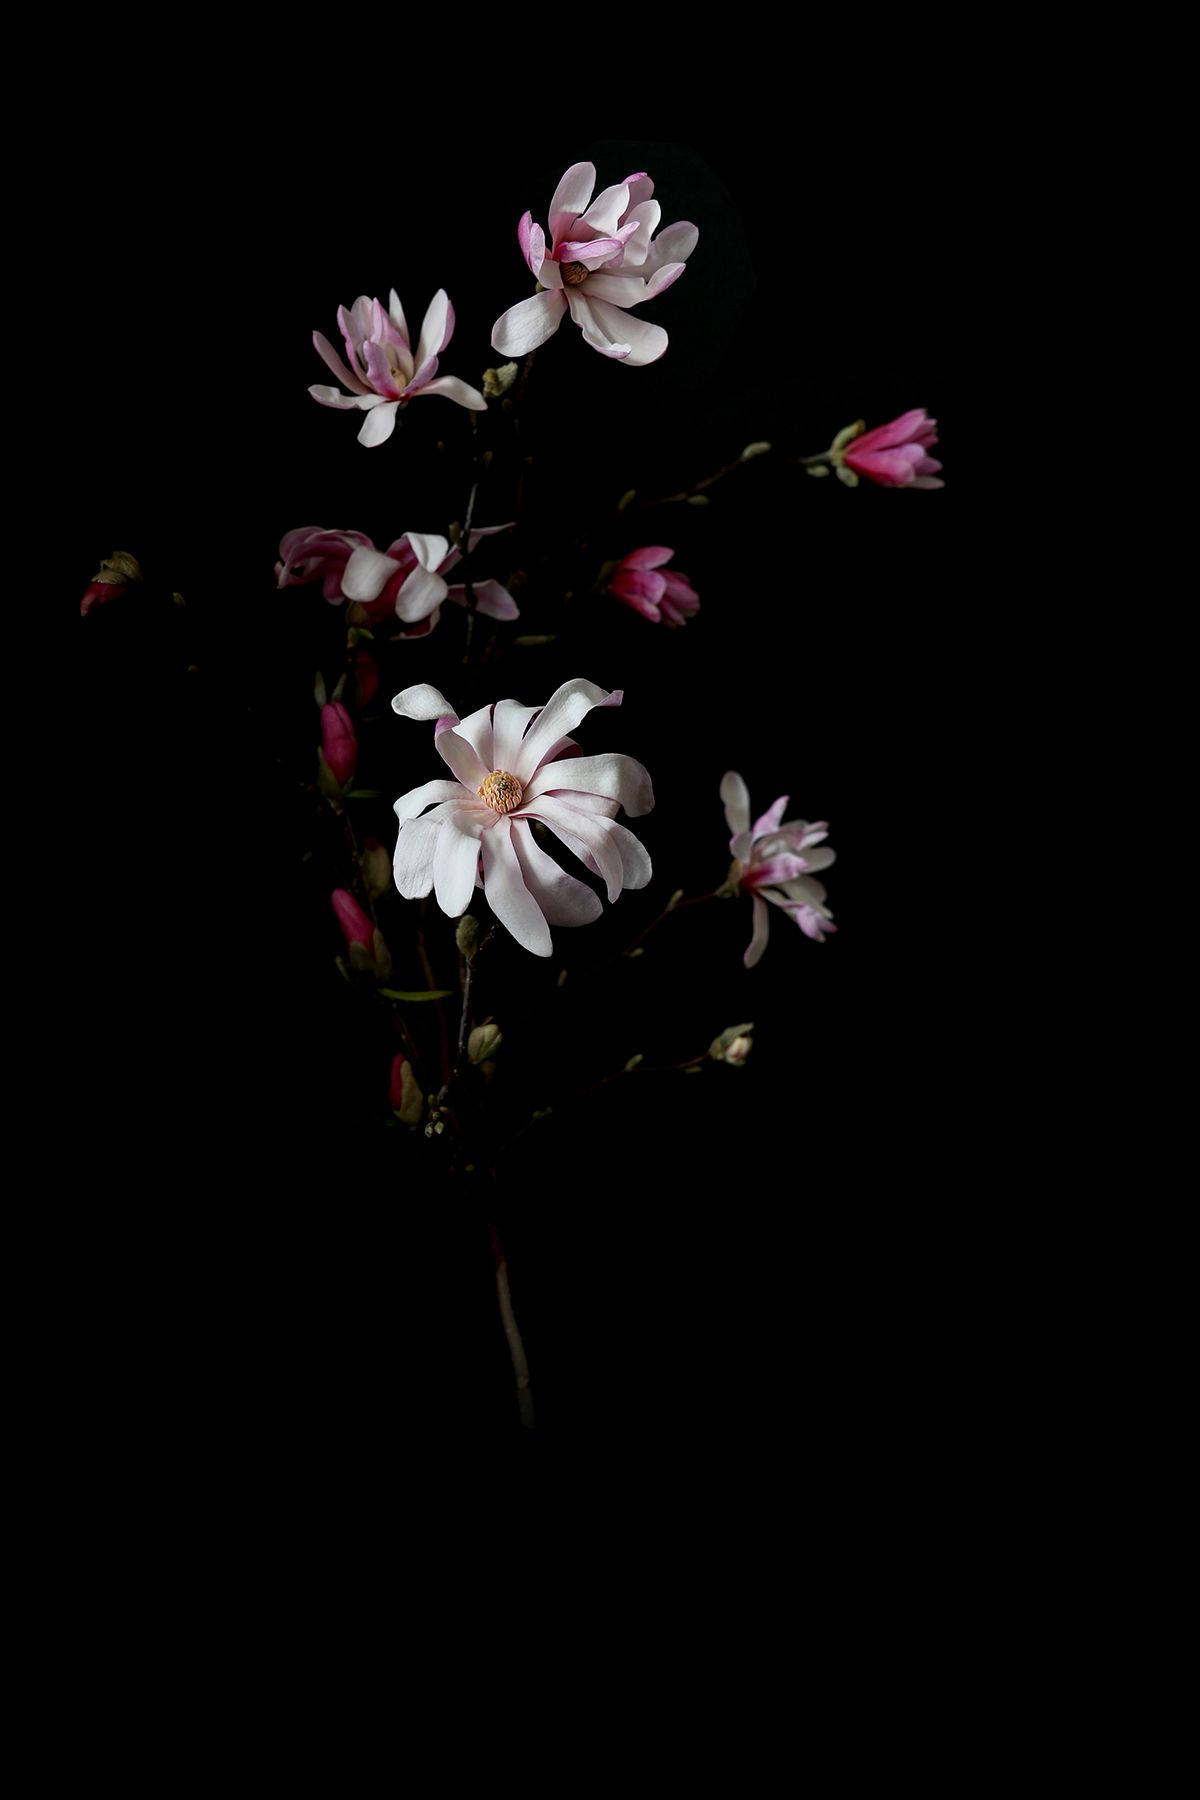 Florespequeñas Rosas Y Blancas En Alta Definición Y Fondo Oscuro. Fondo de pantalla